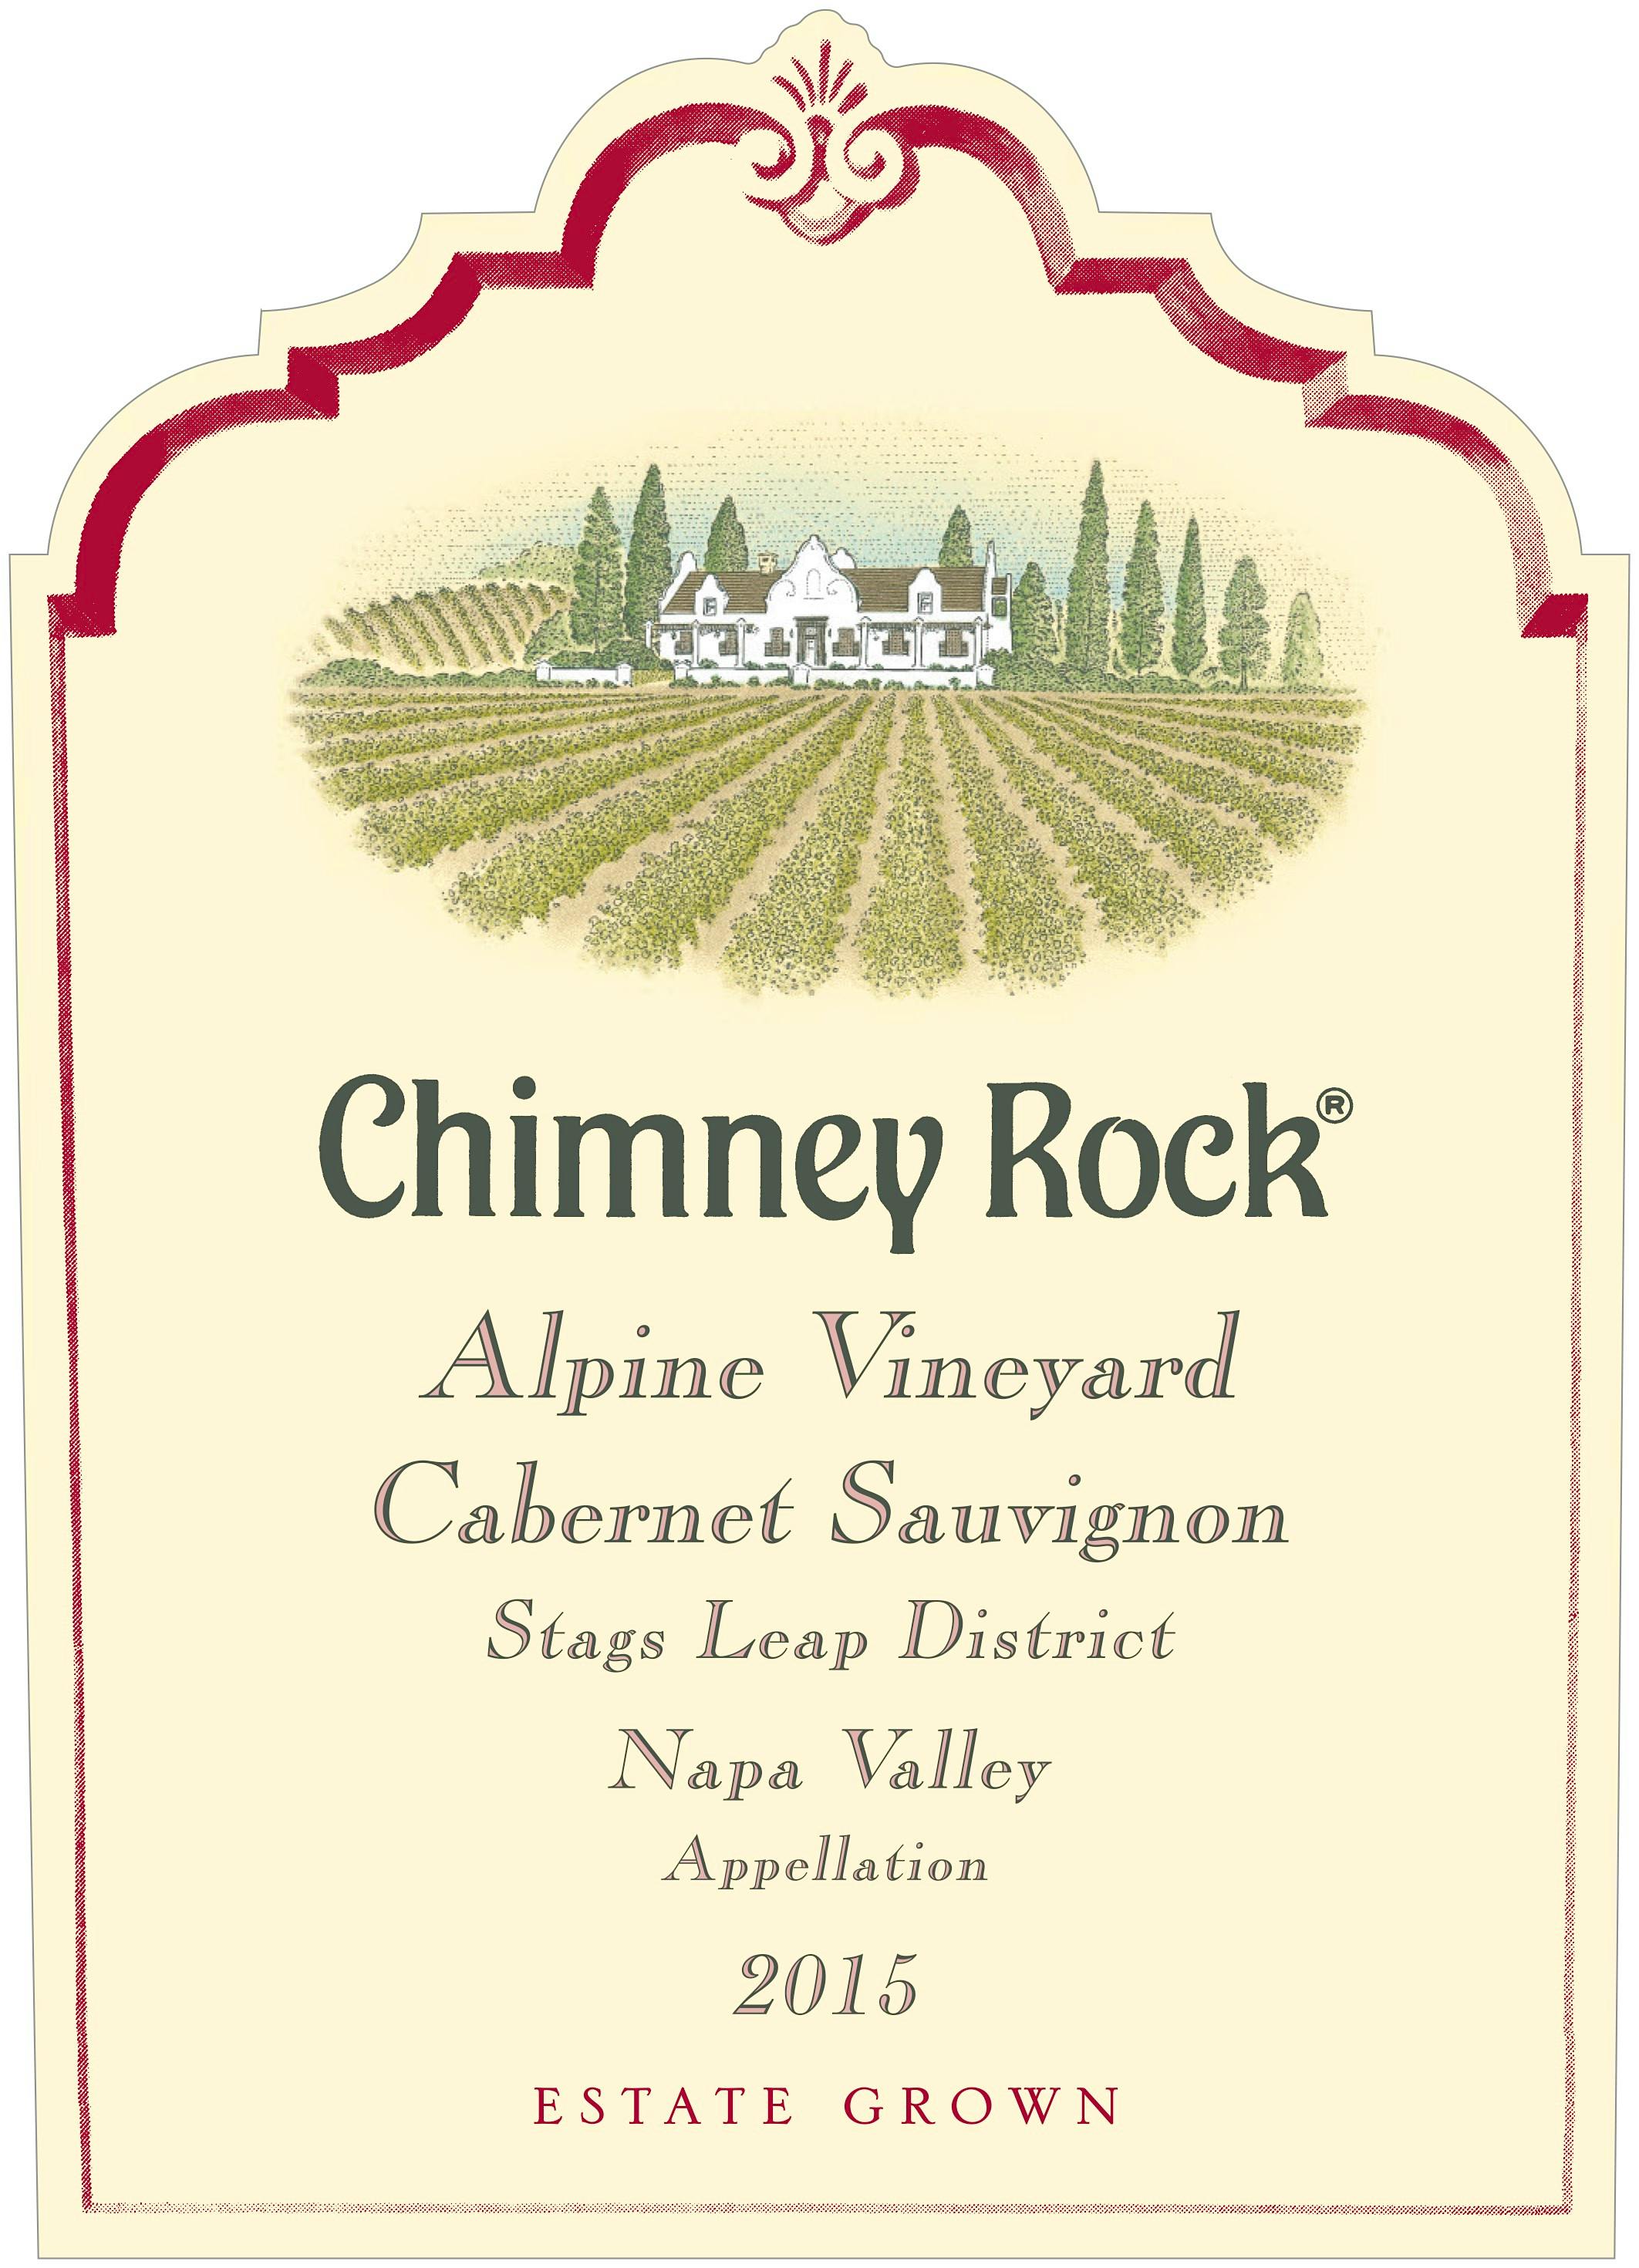 Label for Chimney Rock